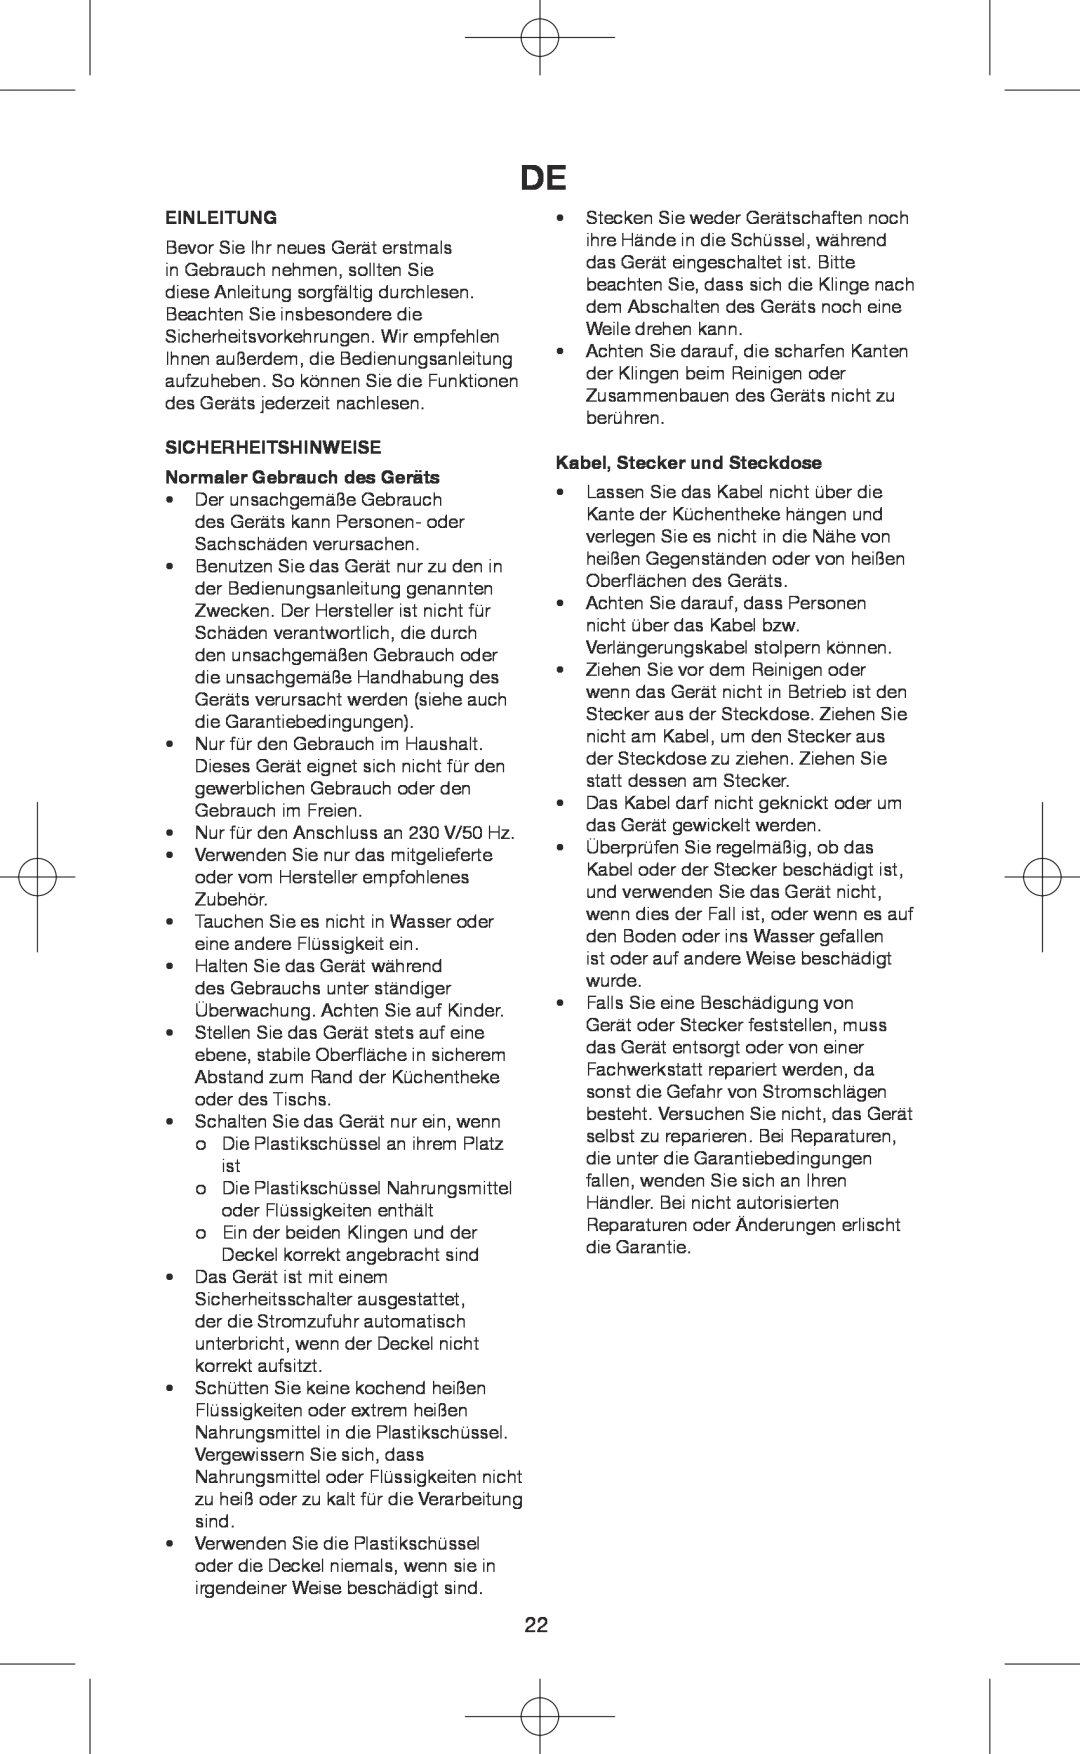 Melissa 146-007 manual Einleitung, SICHERHEITSHINWEISE Normaler Gebrauch des Geräts, Kabel, Stecker und Steckdose 